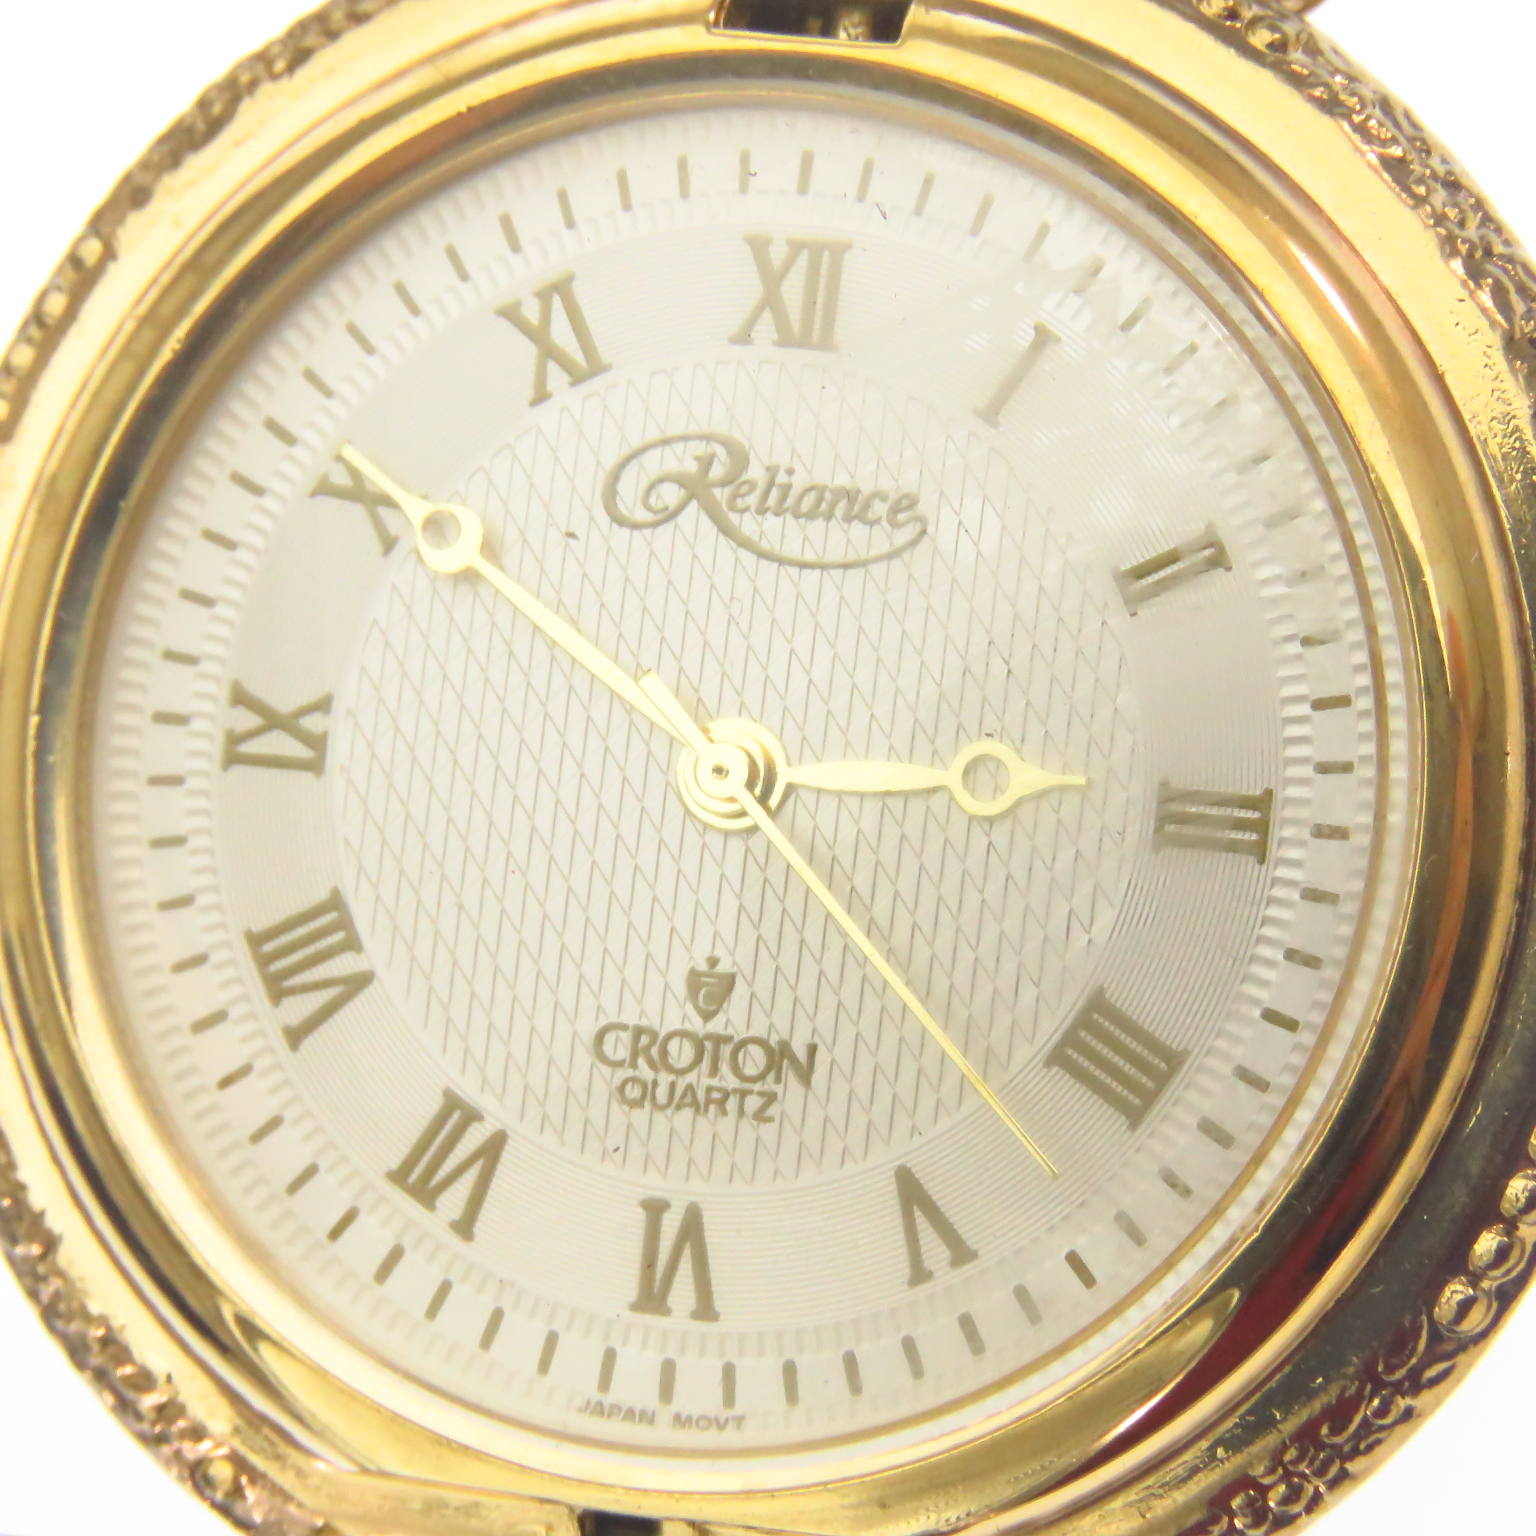 I1701 Croton Reliance Reloj De Bolsillo Tapa Avion Antiguo